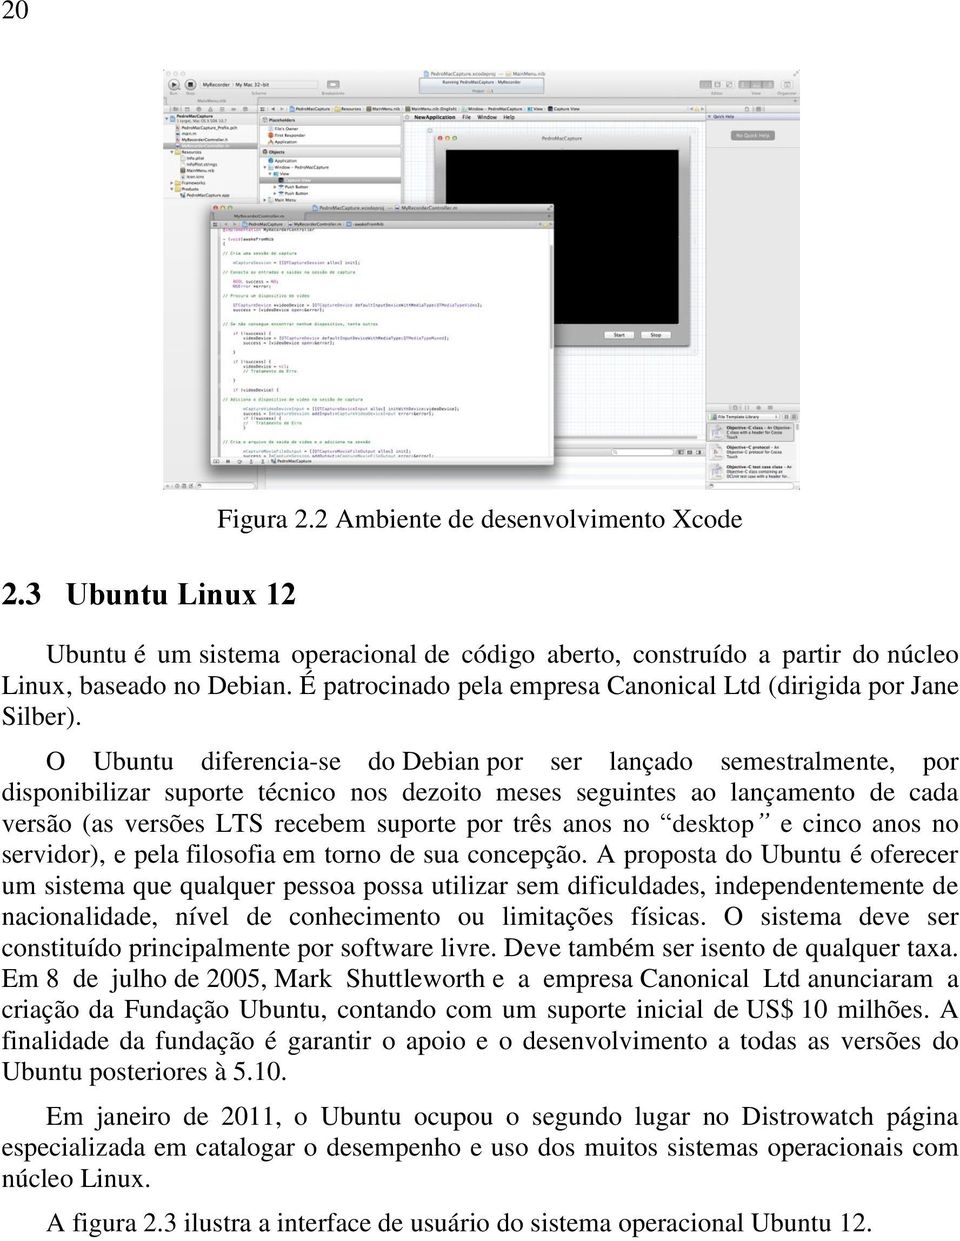 O Ubuntu diferencia-se do Debian por ser lançado semestralmente, por disponibilizar suporte técnico nos dezoito meses seguintes ao lançamento de cada versão (as versões LTS recebem suporte por três